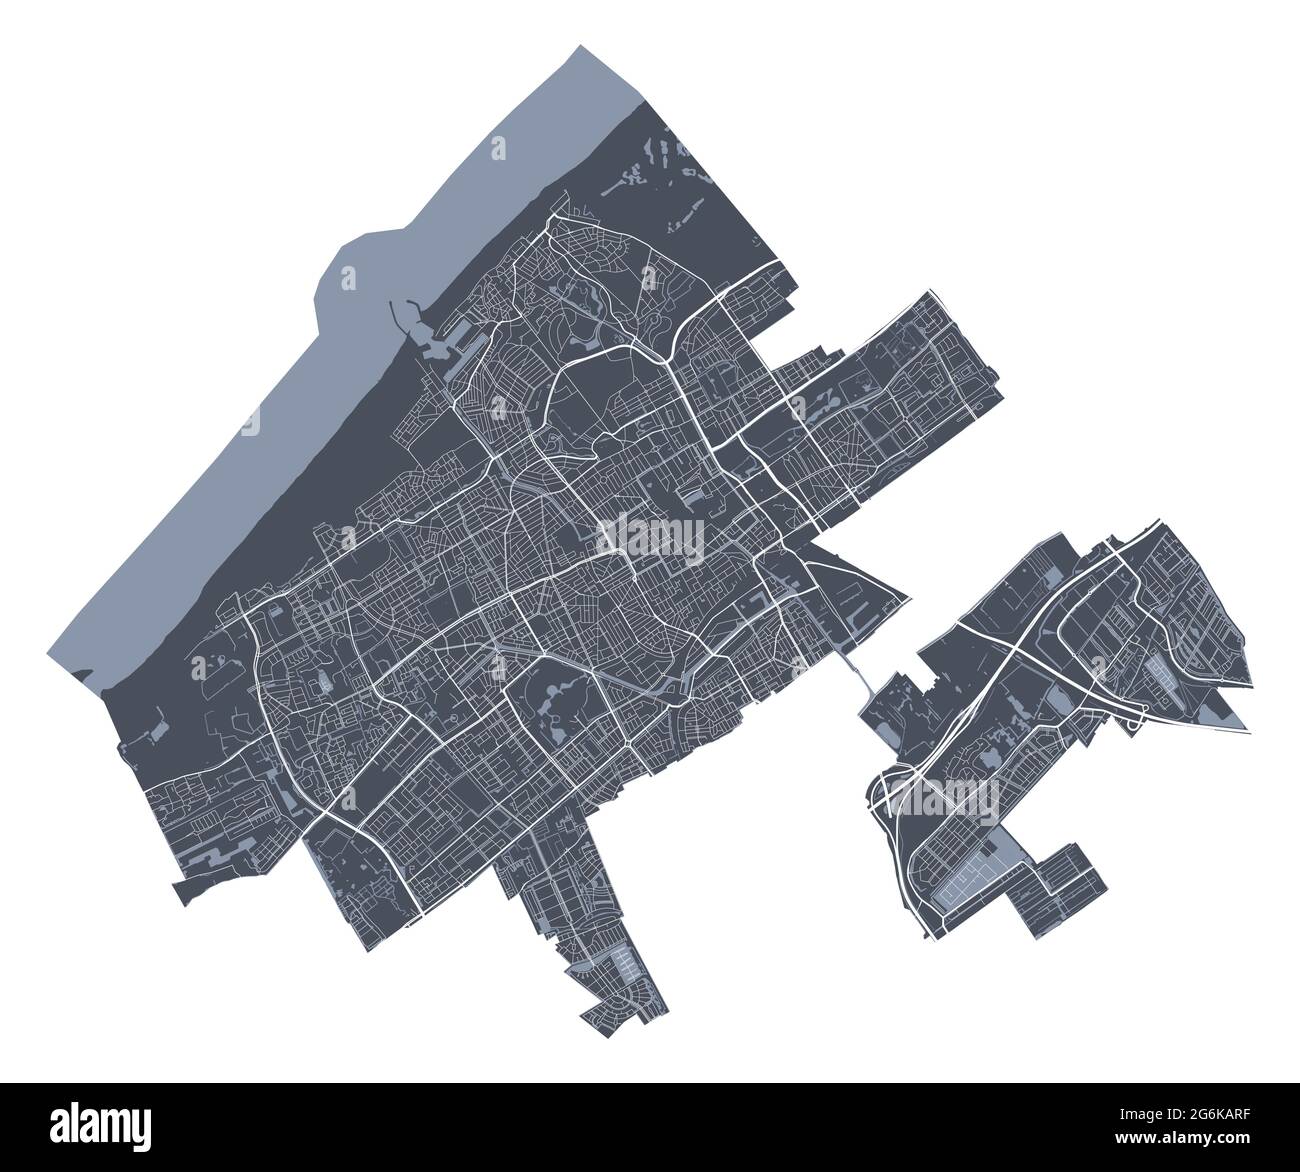 Mapa de La Haya. Mapa vectorial detallado de la zona administrativa de la ciudad de La Haya. Vista de aria metropolitana con póster de paisaje urbano. Tierra oscura con calles blancas, carreteras y avenida Ilustración del Vector